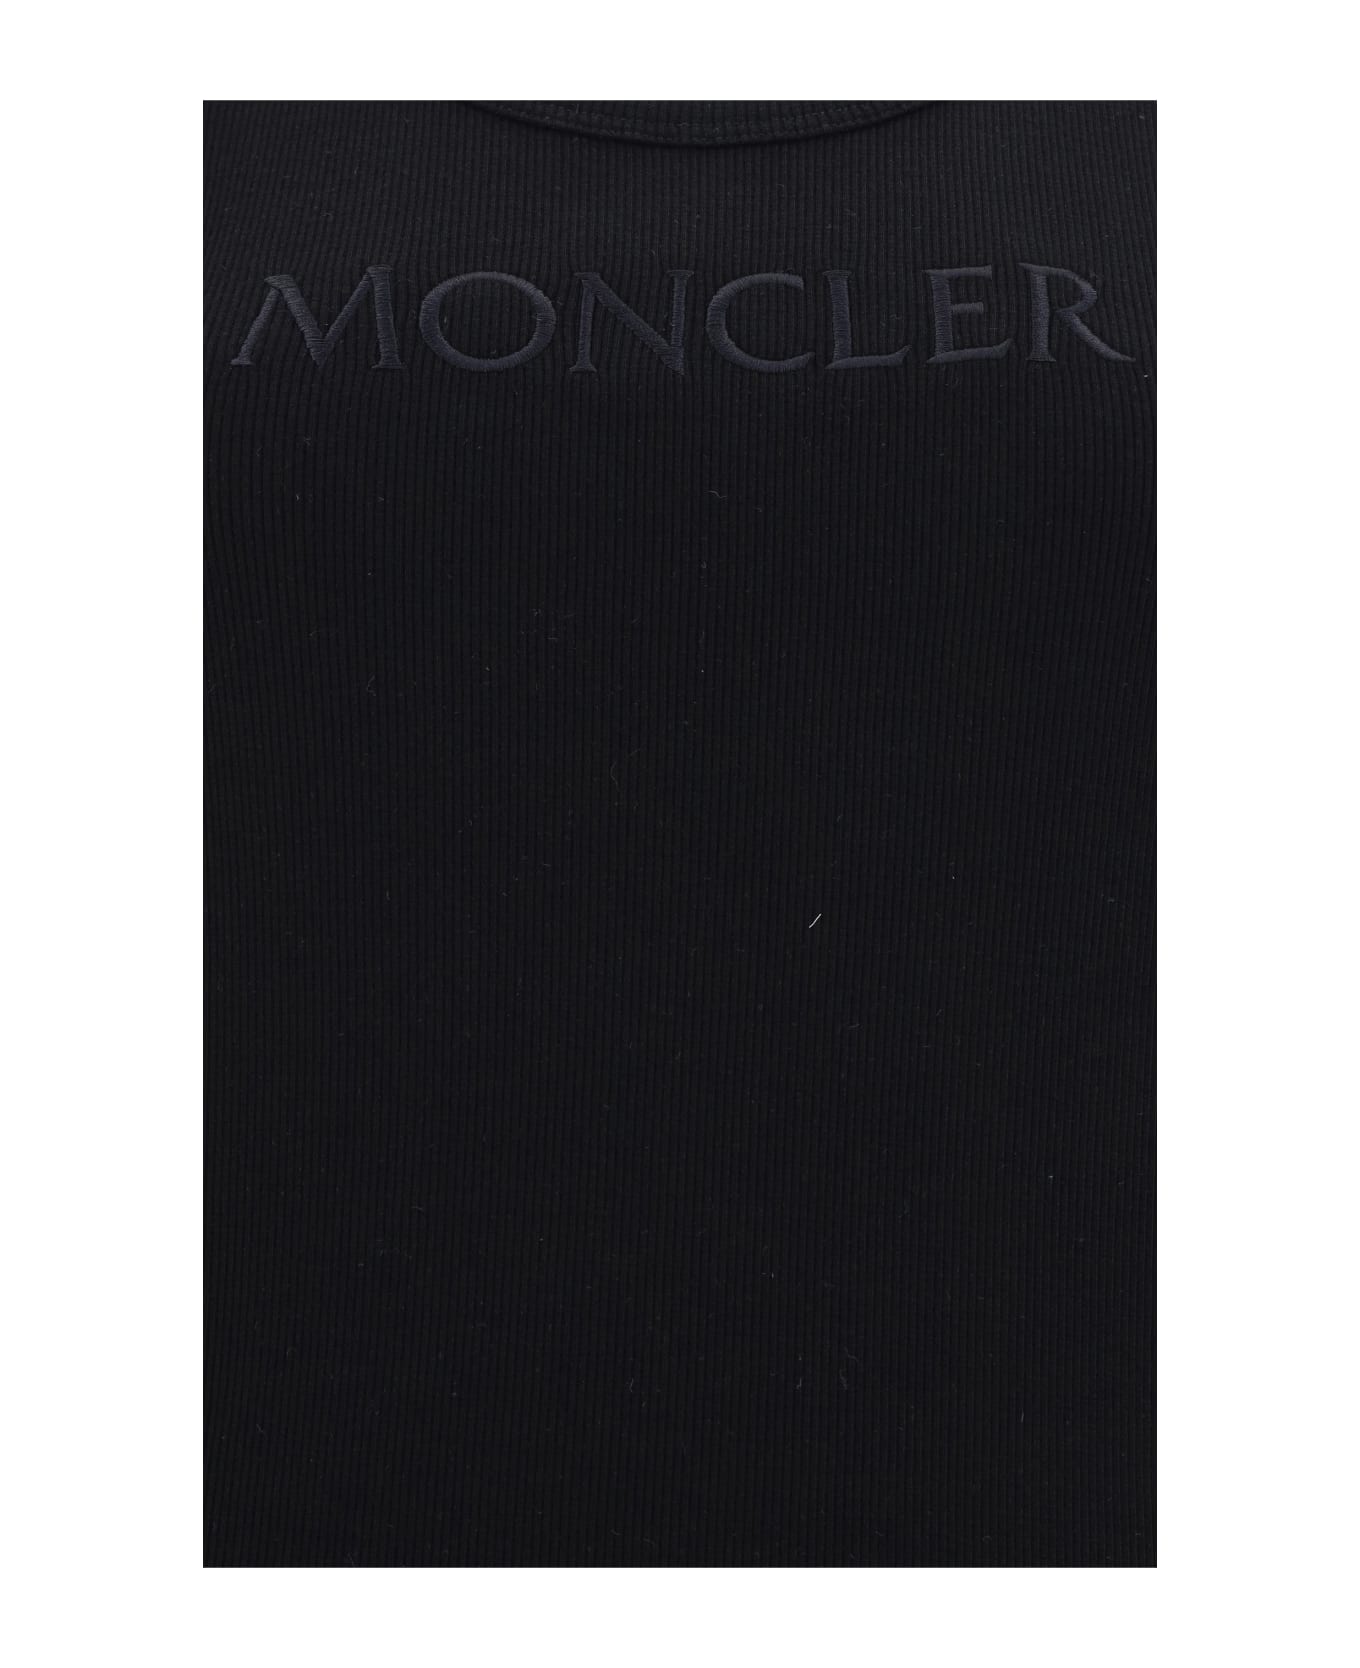 Moncler Top - 999